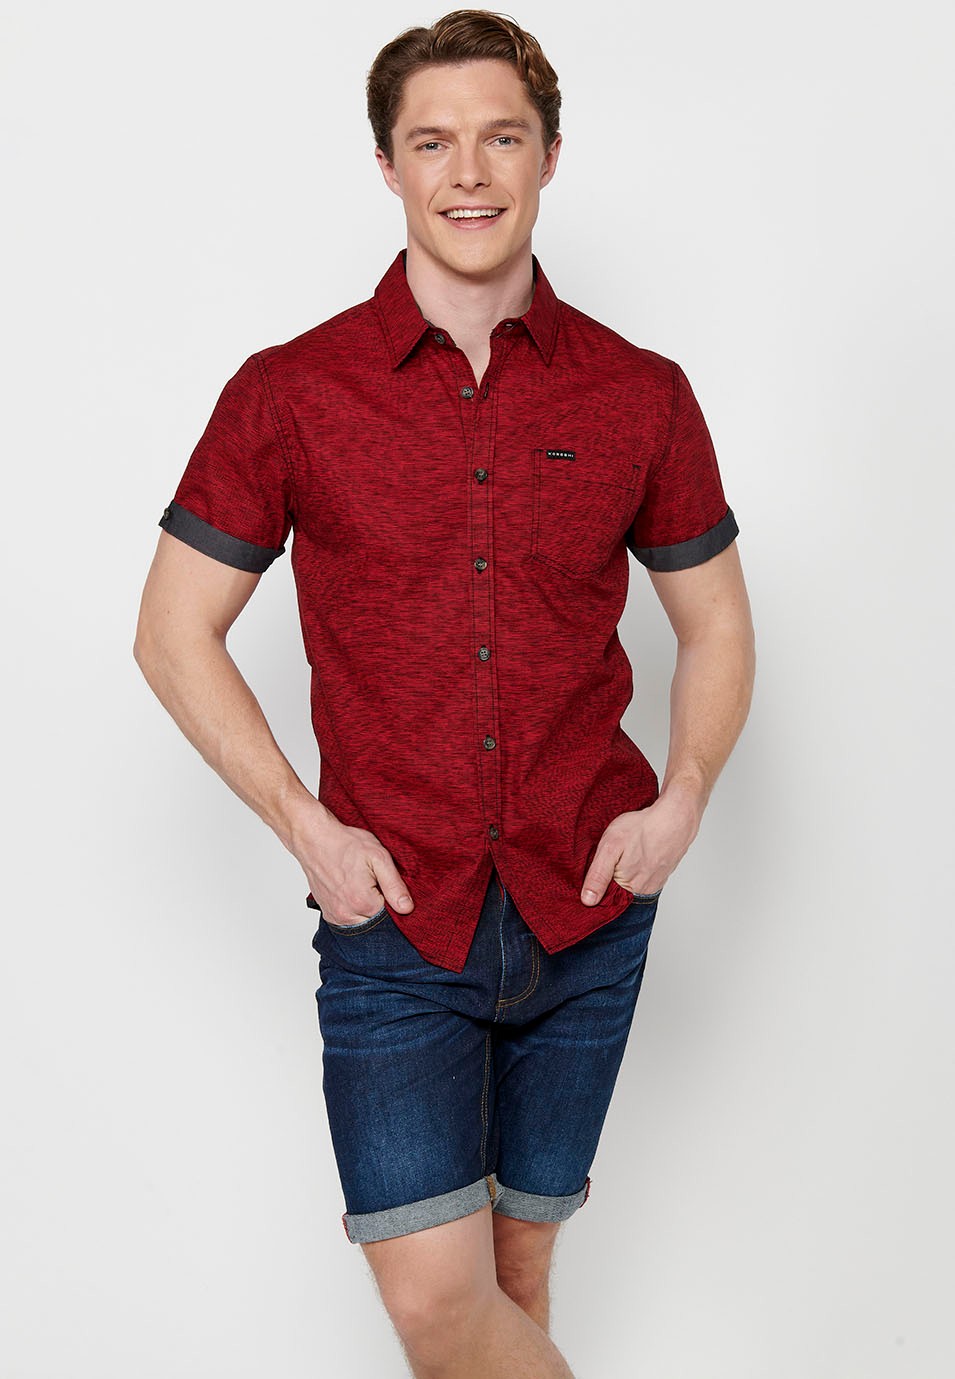 Camisa manga corta de algodón, color rojo para hombres